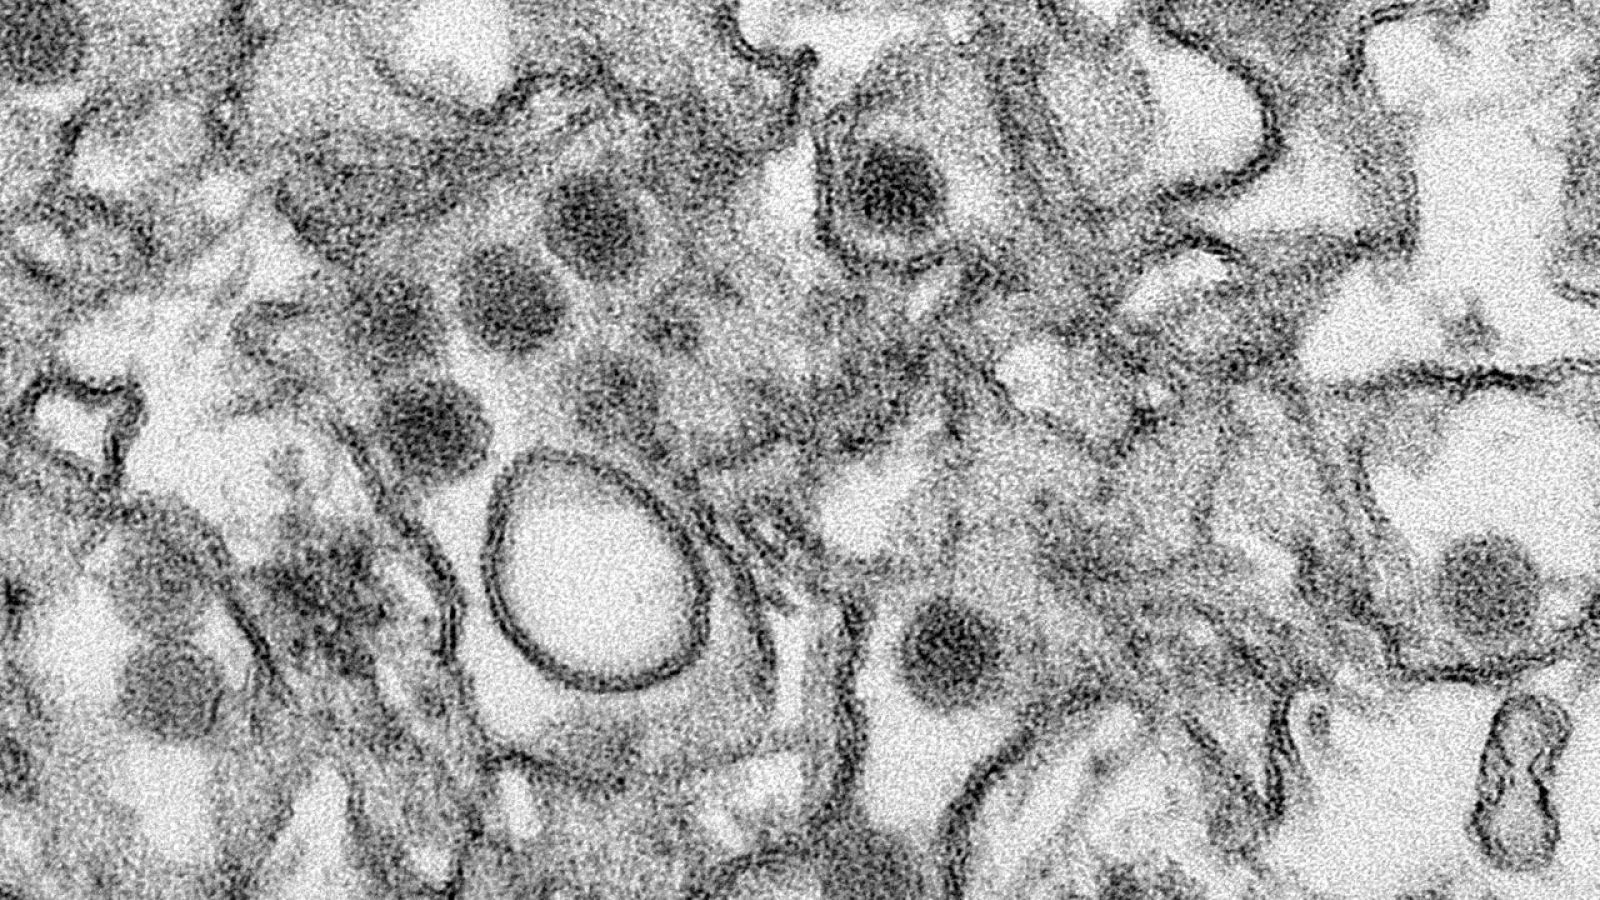 Imagen del virus del Zika tomada por el Centro de Control de Enfermedades de Atlanta, en Estados Unidos